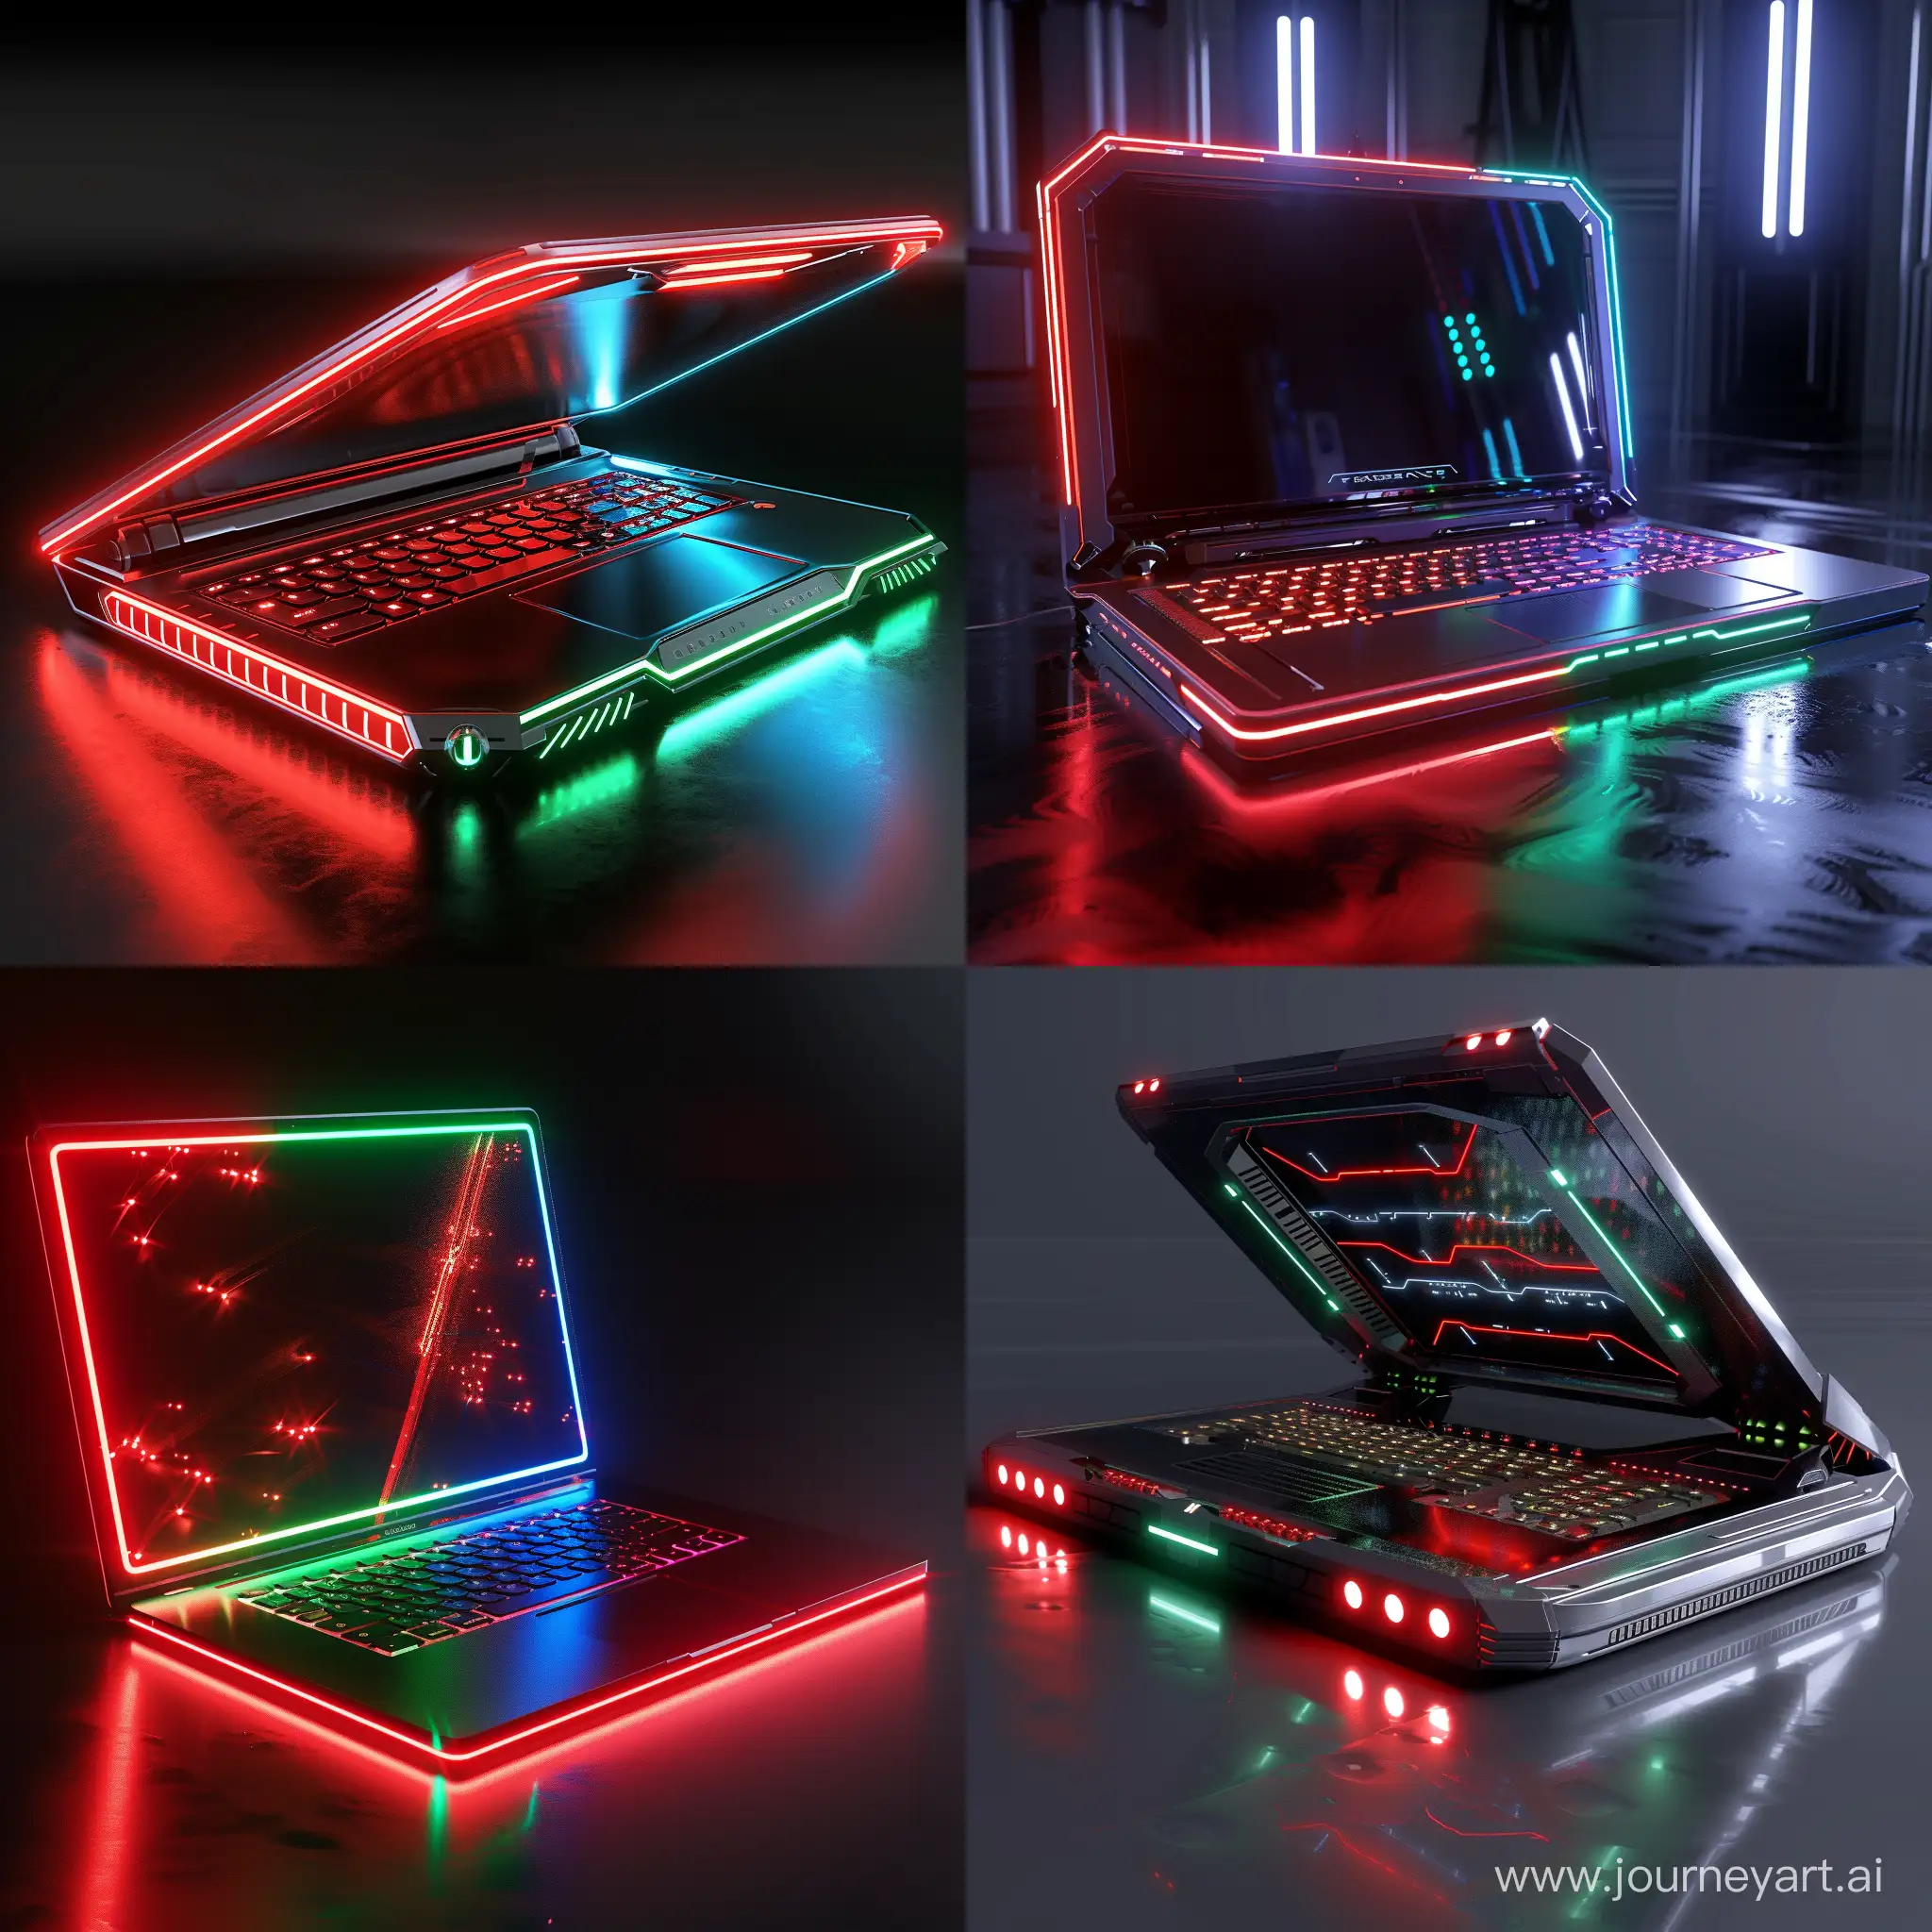 Futuristic laptop, octane render, red PeLEDs, green PeLEDs, blue PeLEDs